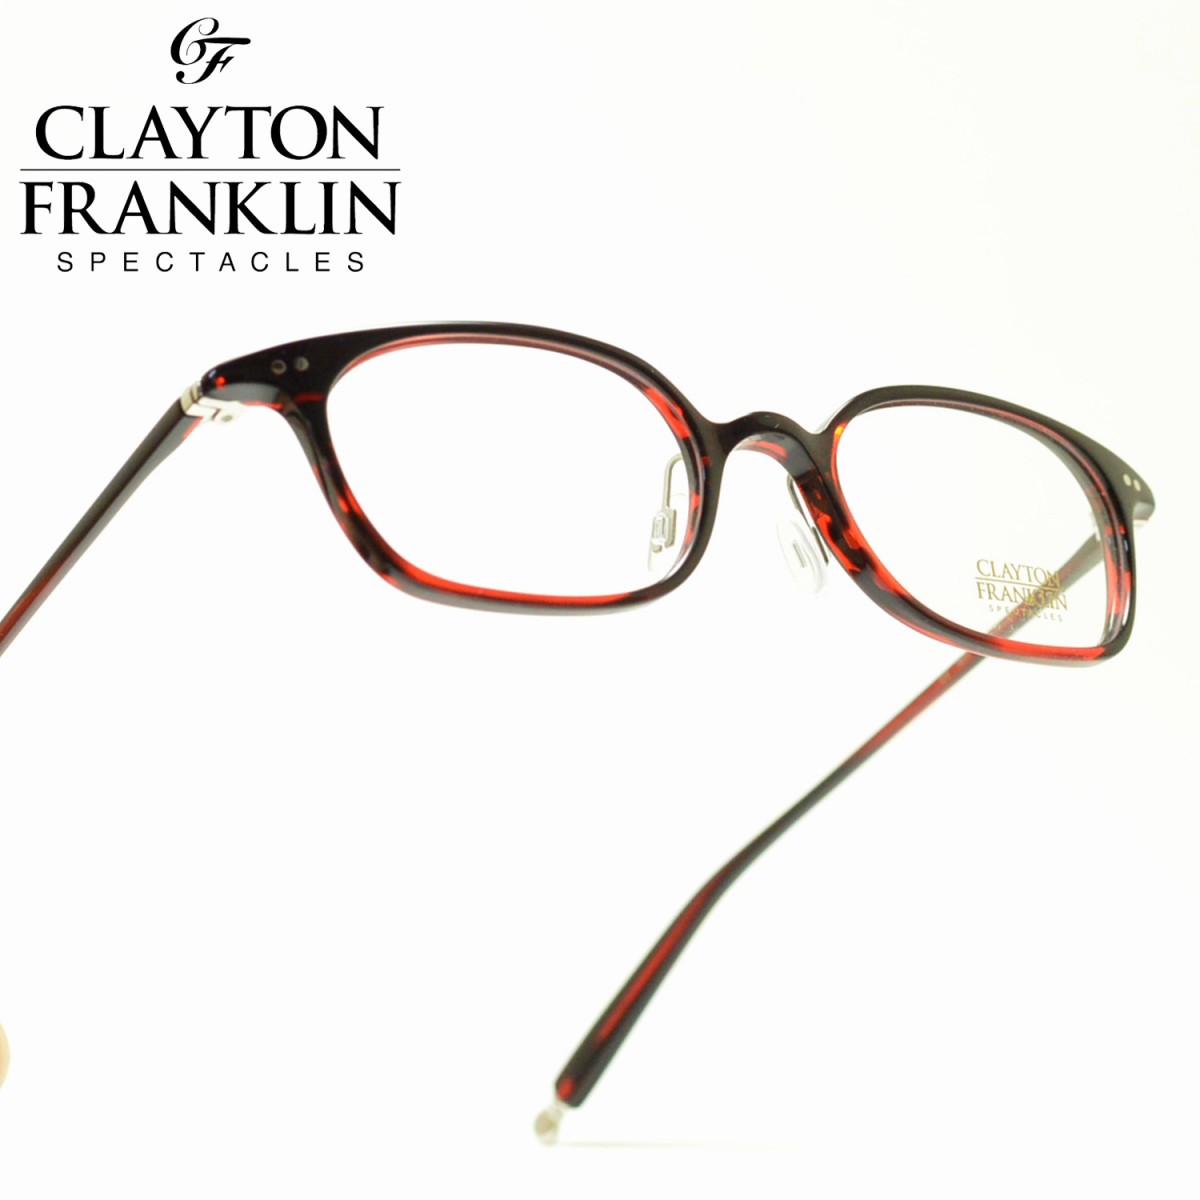 楽天市場 Clayton Franklin クレイトンフランクリン722 Rds レッドササメガネ 眼鏡 めがね メンズ レディース おしゃれ ブランド 人気 おすすめ フレーム 流行り 度付き レンズ デコリンメガネ